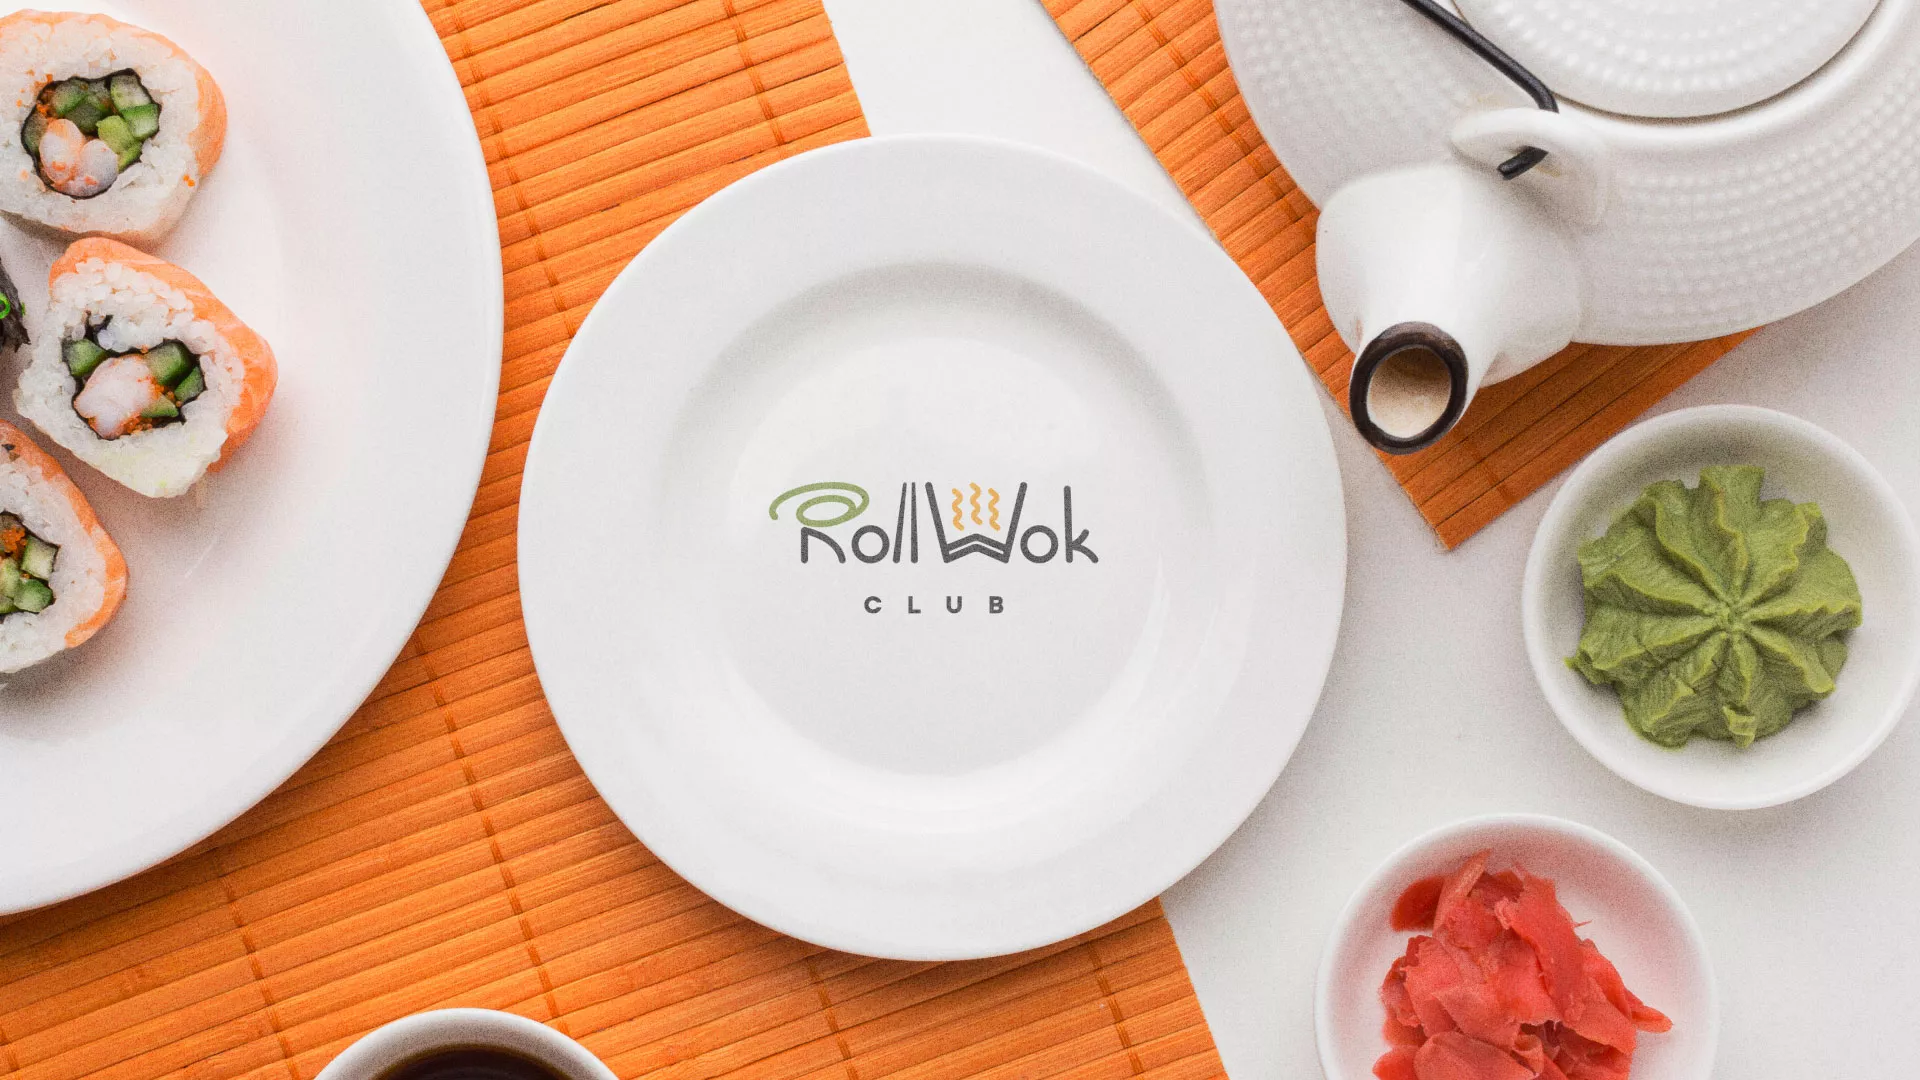 Разработка логотипа и фирменного стиля суши-бара «Roll Wok Club» в Боровске